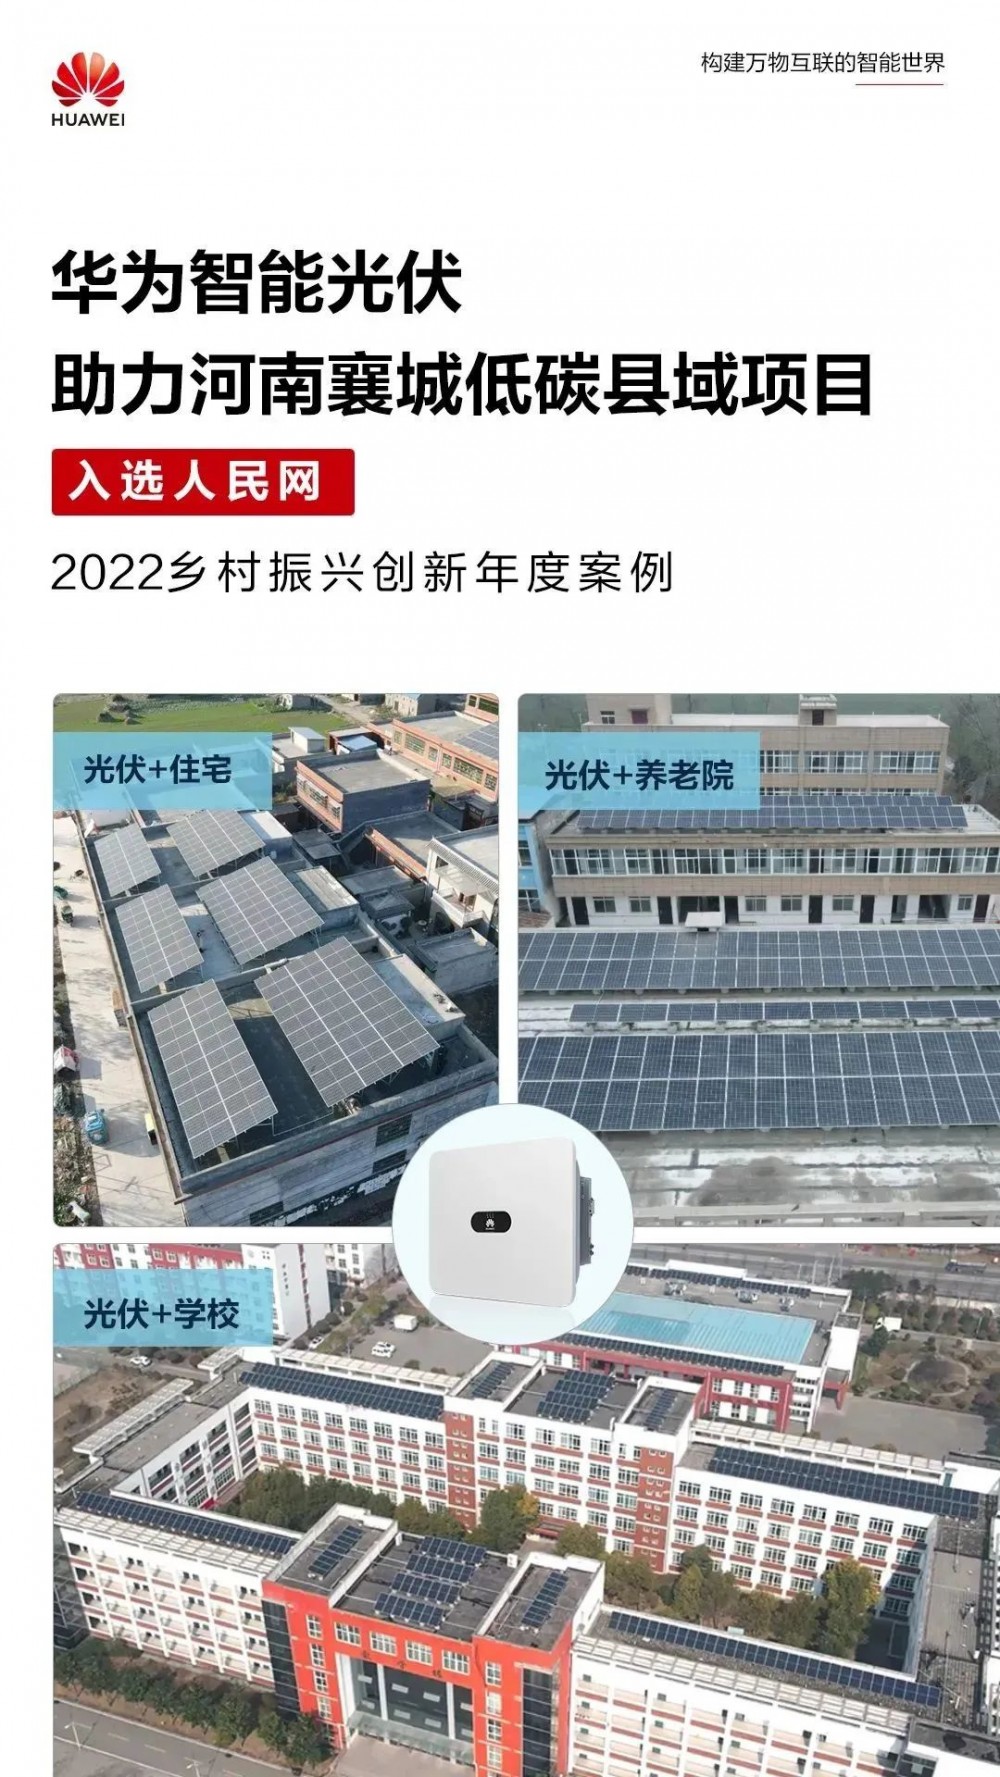 河南襄城低碳县域项目 入选人民网乡村振兴创新年度案例